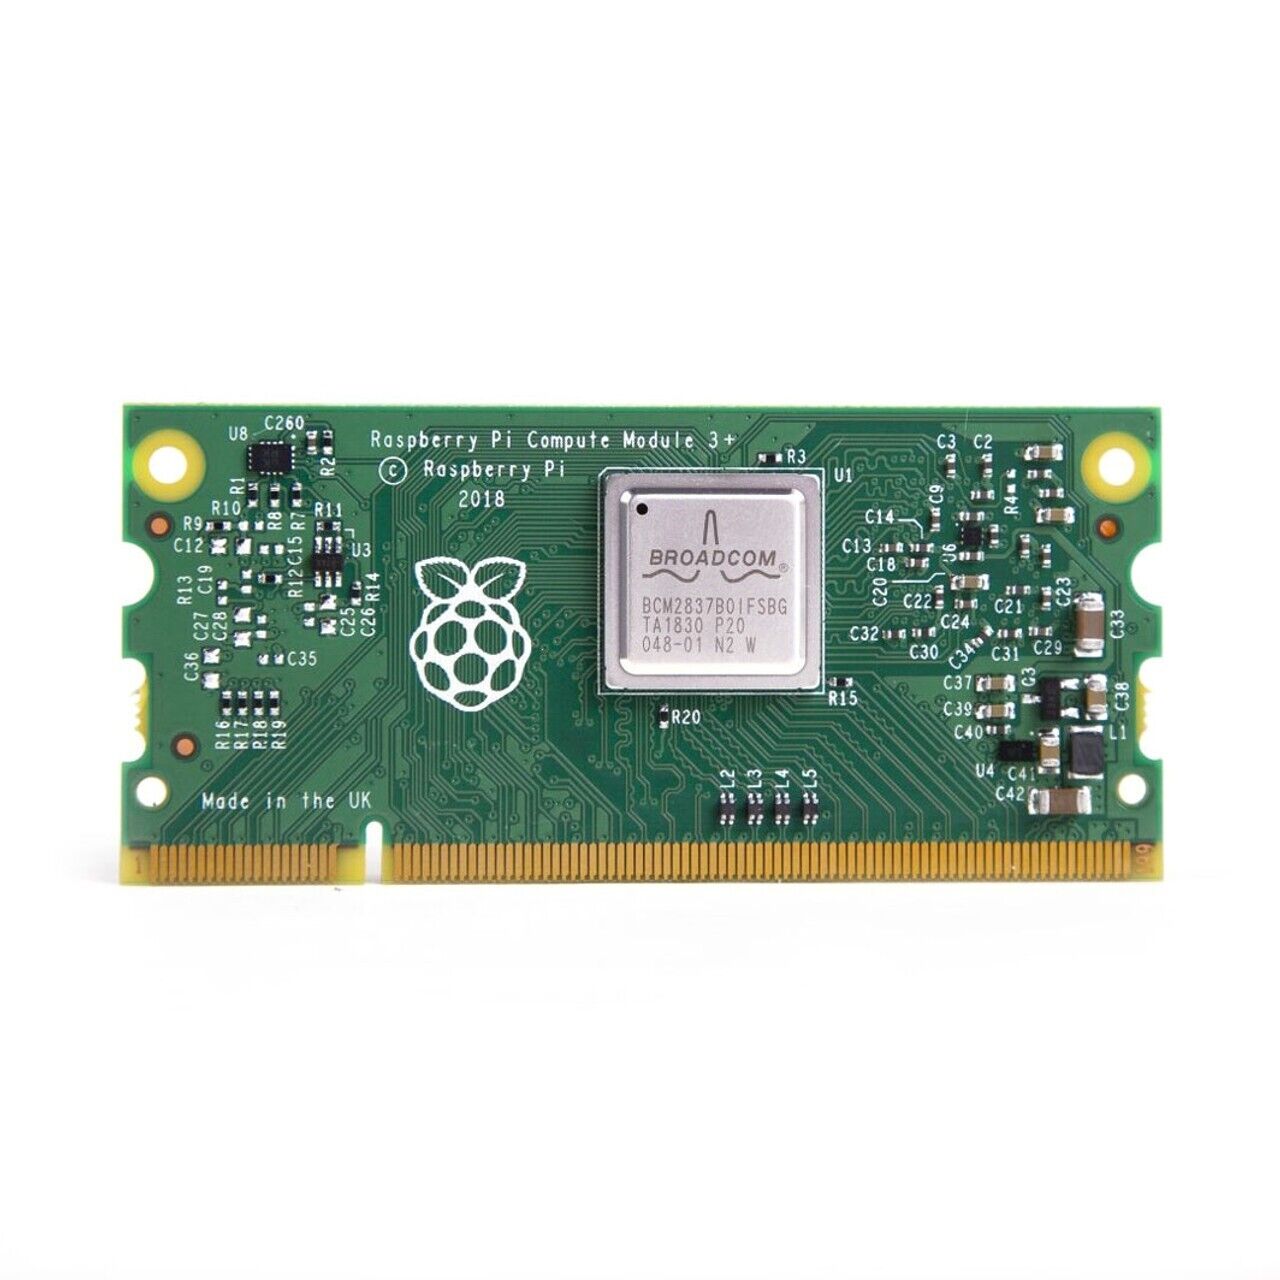 Raspberry Pi Compute Module 3+ 16GB SC0147